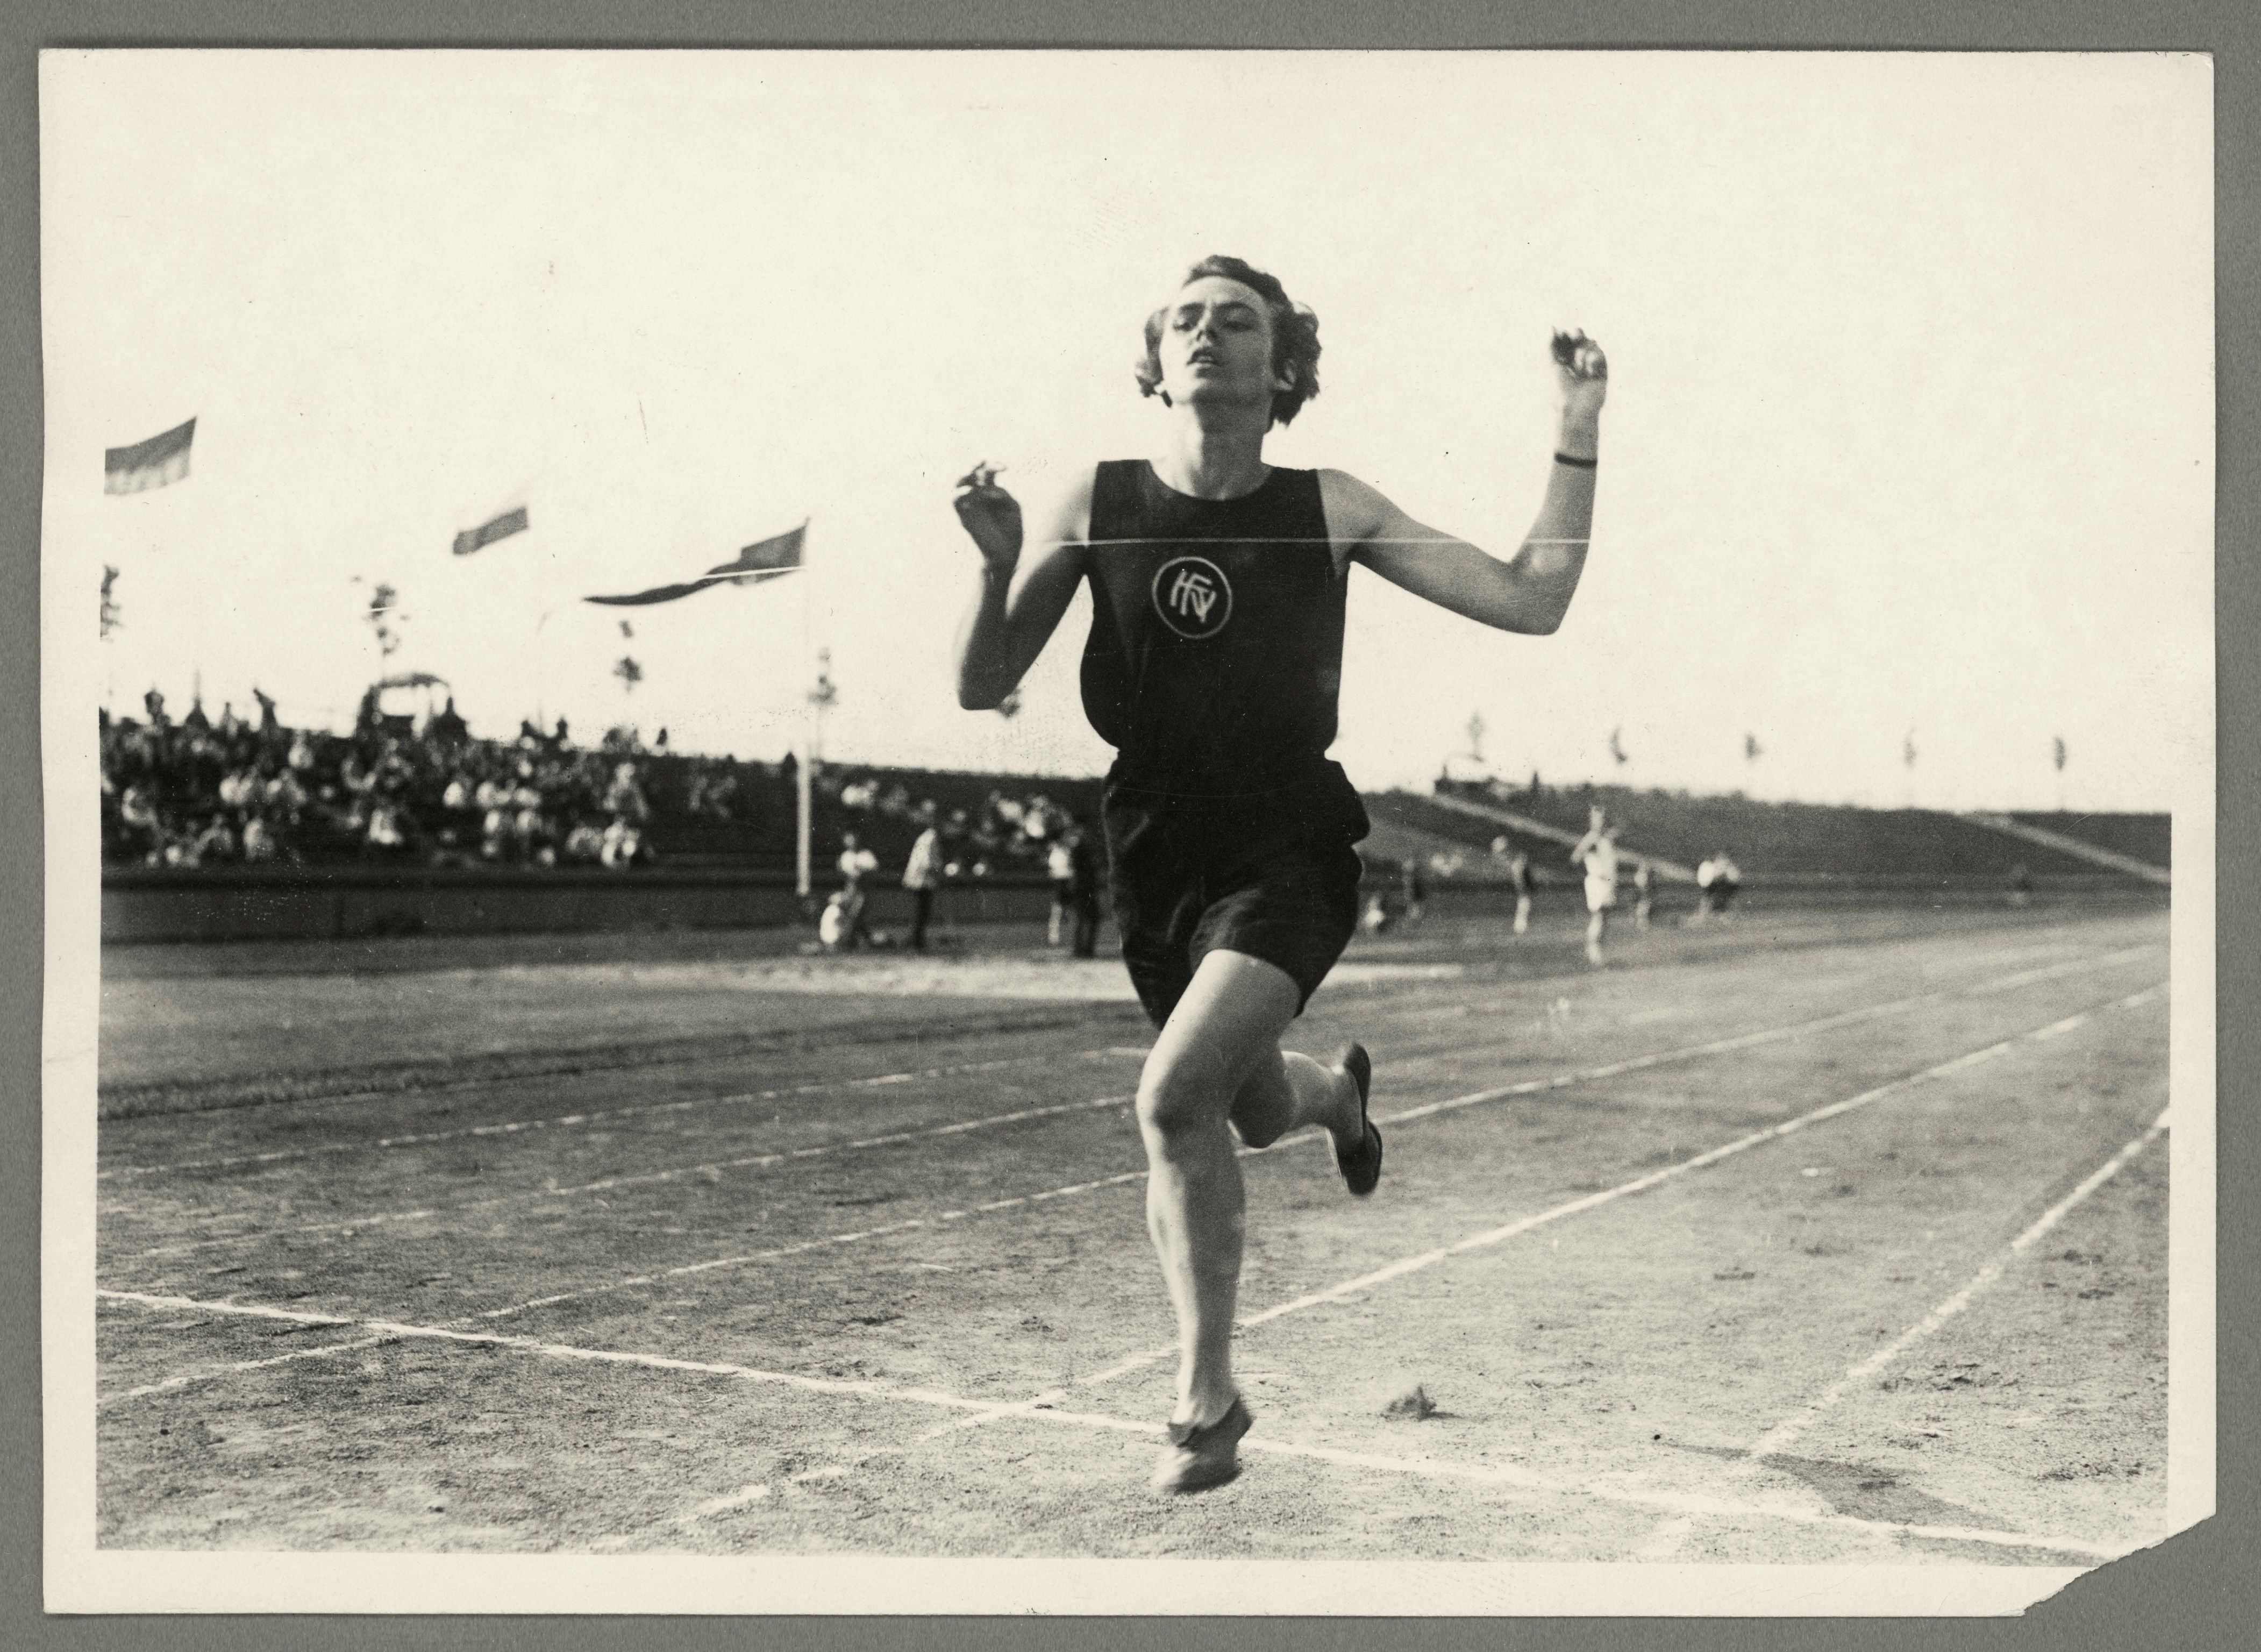 Bei den Olympischen Spielen 1928 in Amsterdam stellt die deutsche Leichtathletin Lina Radke mit 02:18 Minuten einen neuen Weltrekord im 800-Meter-Lauf der Frauen auf. Sie trägt Dassler-Schuhe - ein Geschenk des jüngeren Bruders Adolf.